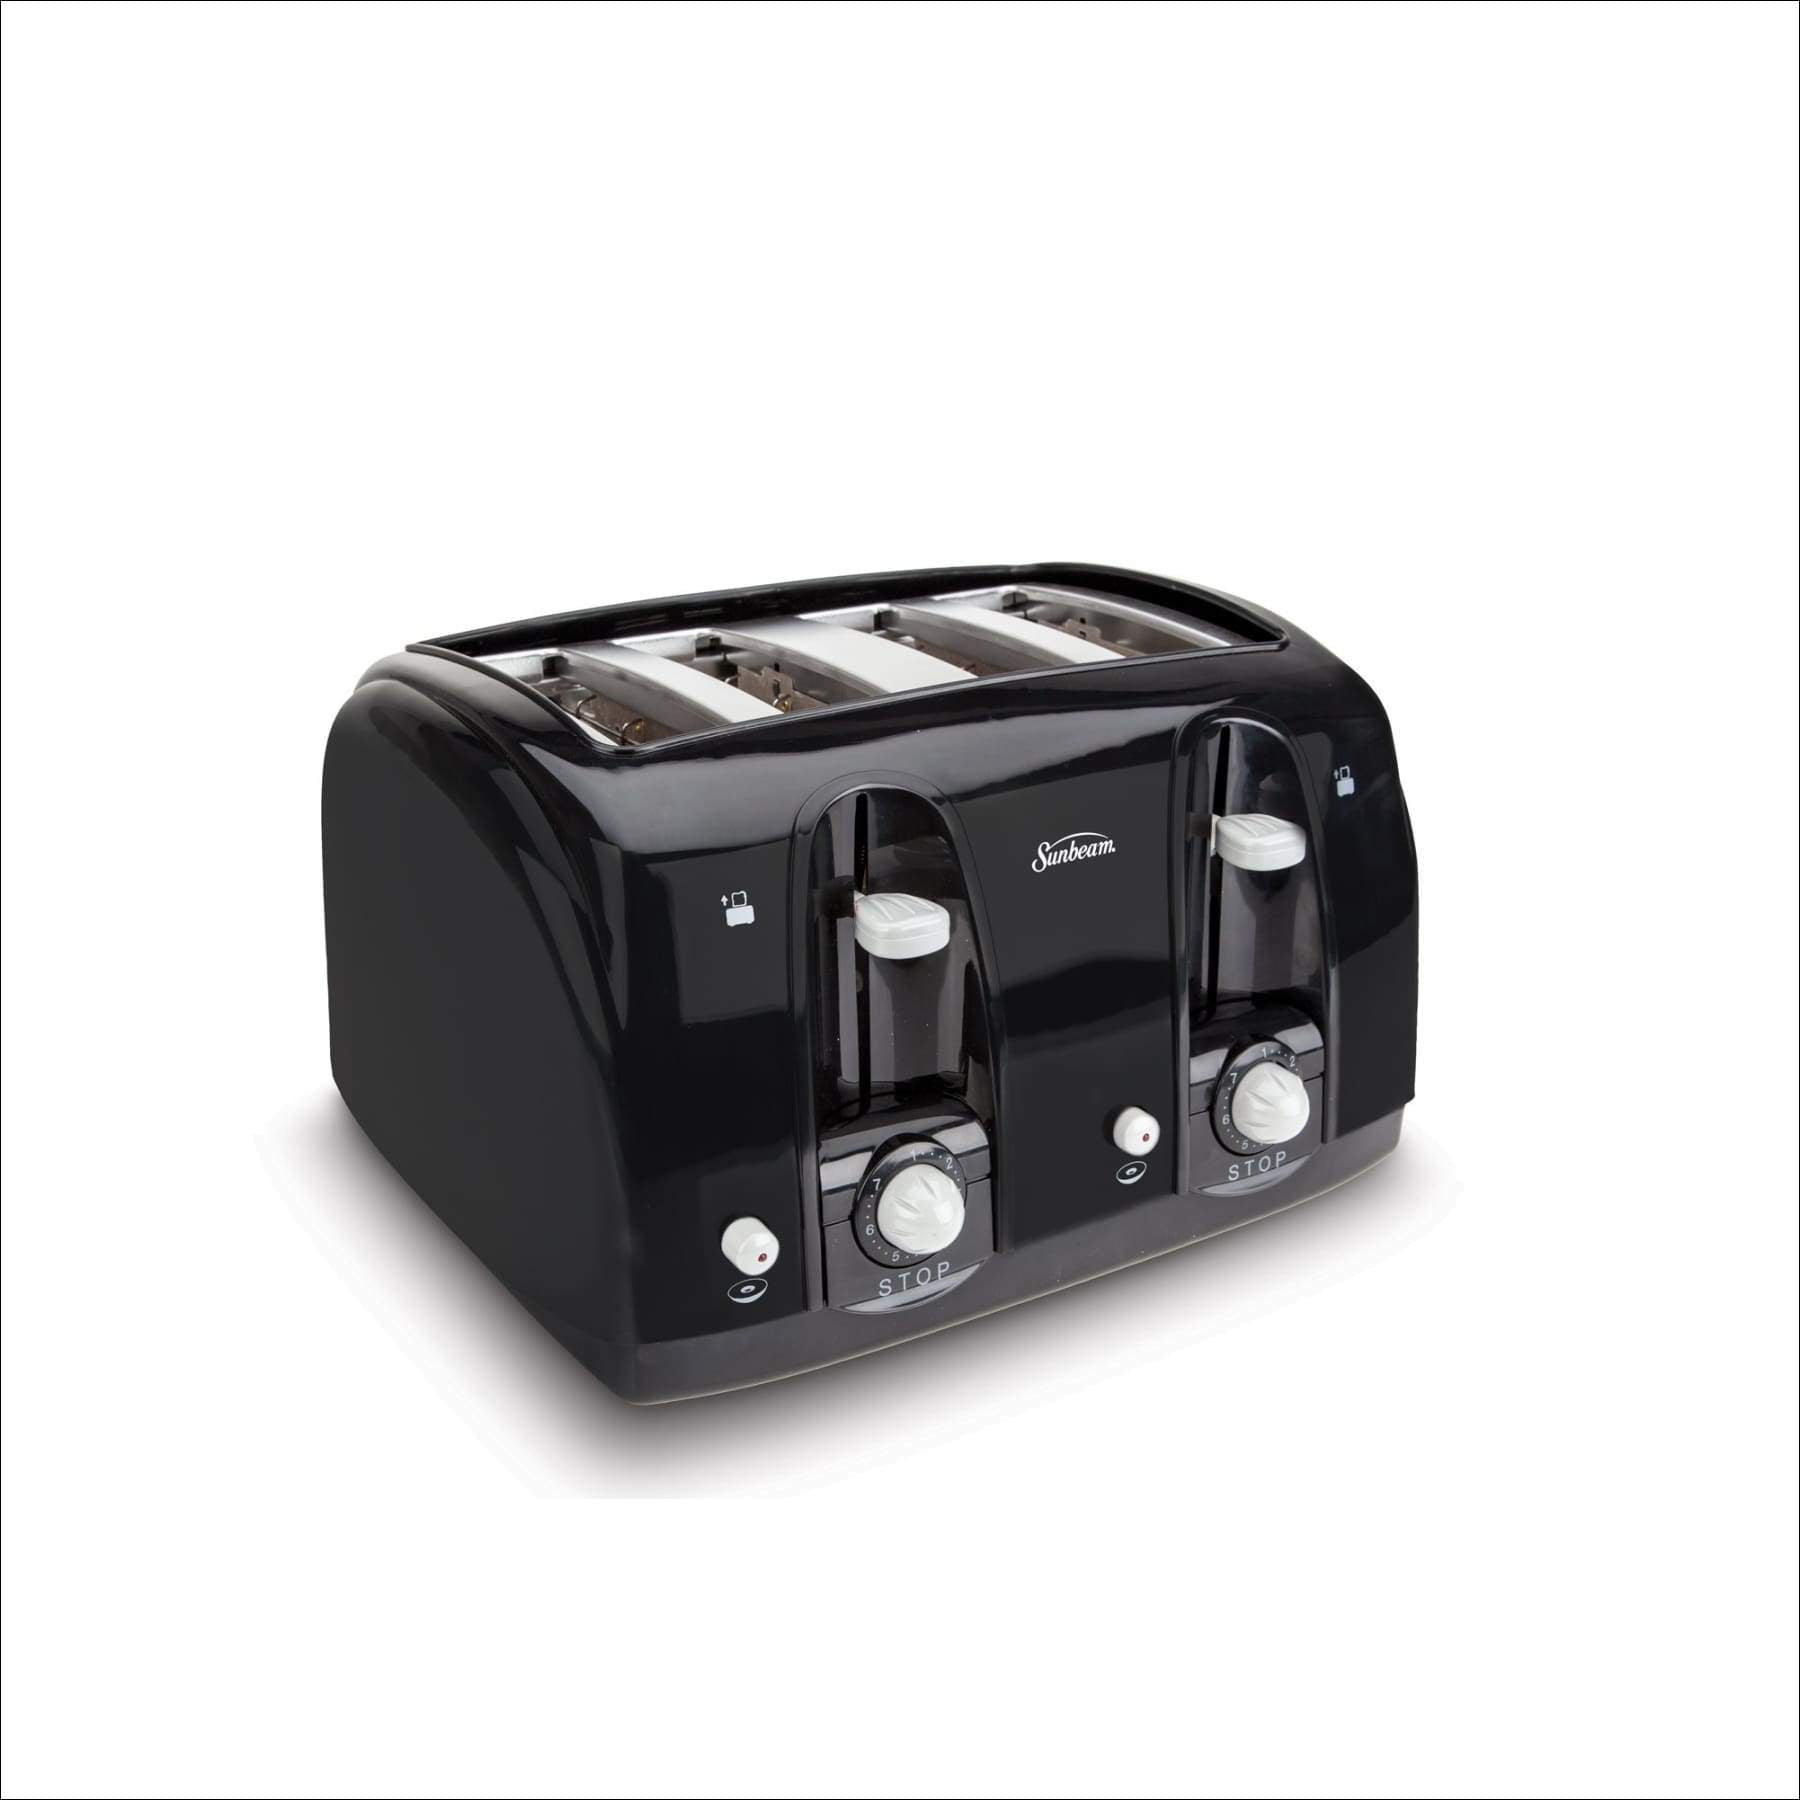 003911-100-000 Sunbeam Wide Slot 4-Slice Toaster Black 